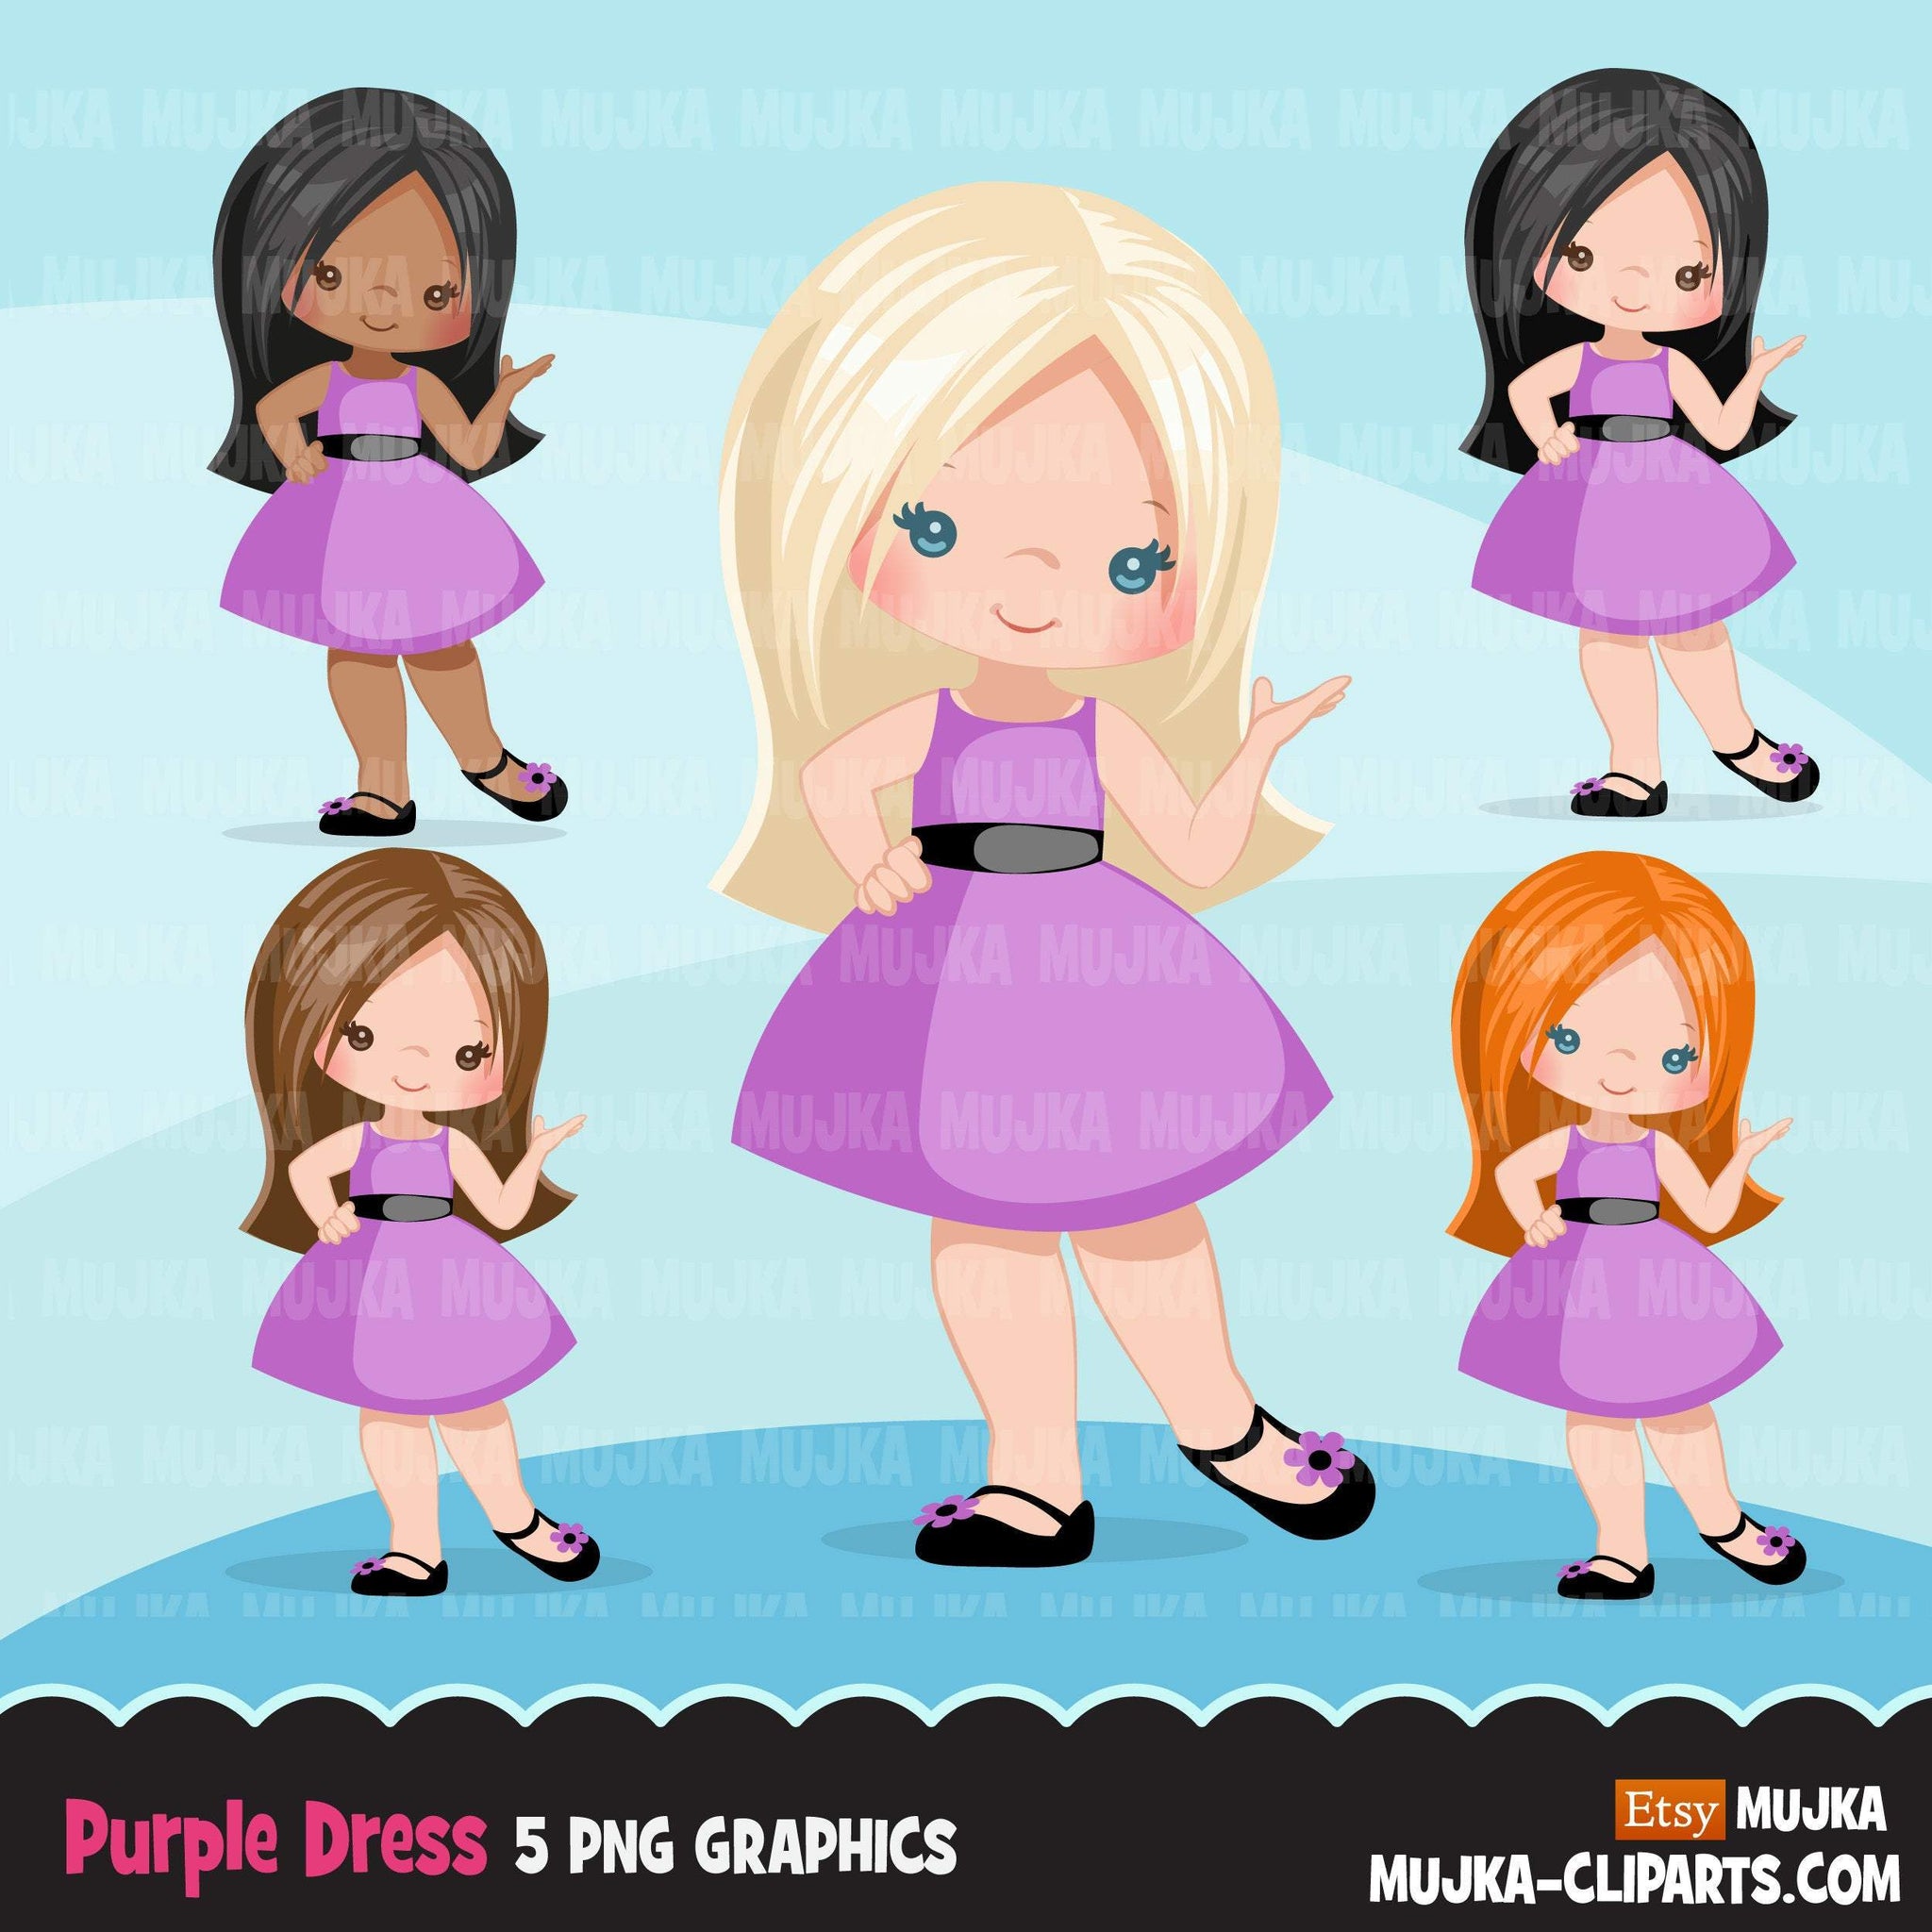 Clipart de primavera, niñas vestidas de púrpura, gráficos lindos para niños, moda de verano, imágenes prediseñadas PNG de uso comercial, recorte de cumpleaños